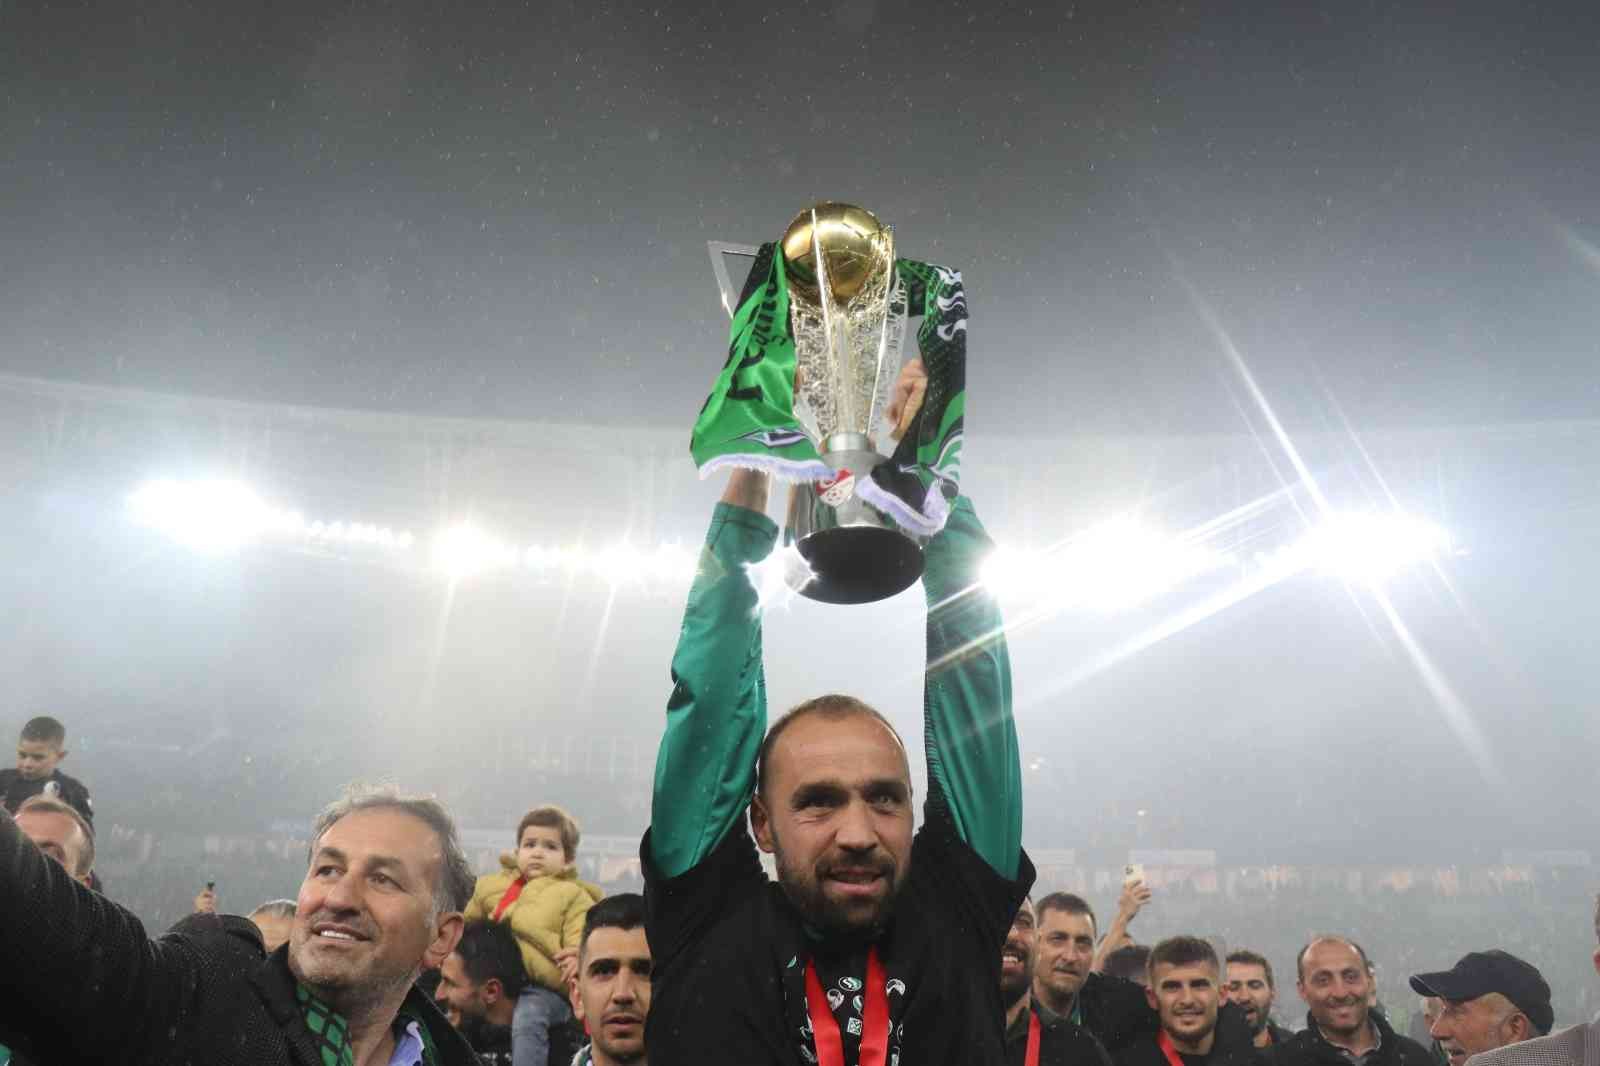 2011 yılında Play-Off finalini kazanarak 1. Lig’e yükselen Sakaryaspor, daha sonra yeniden alt liglere düştü ve 10 yıl verdiği mücadele sonrası ...